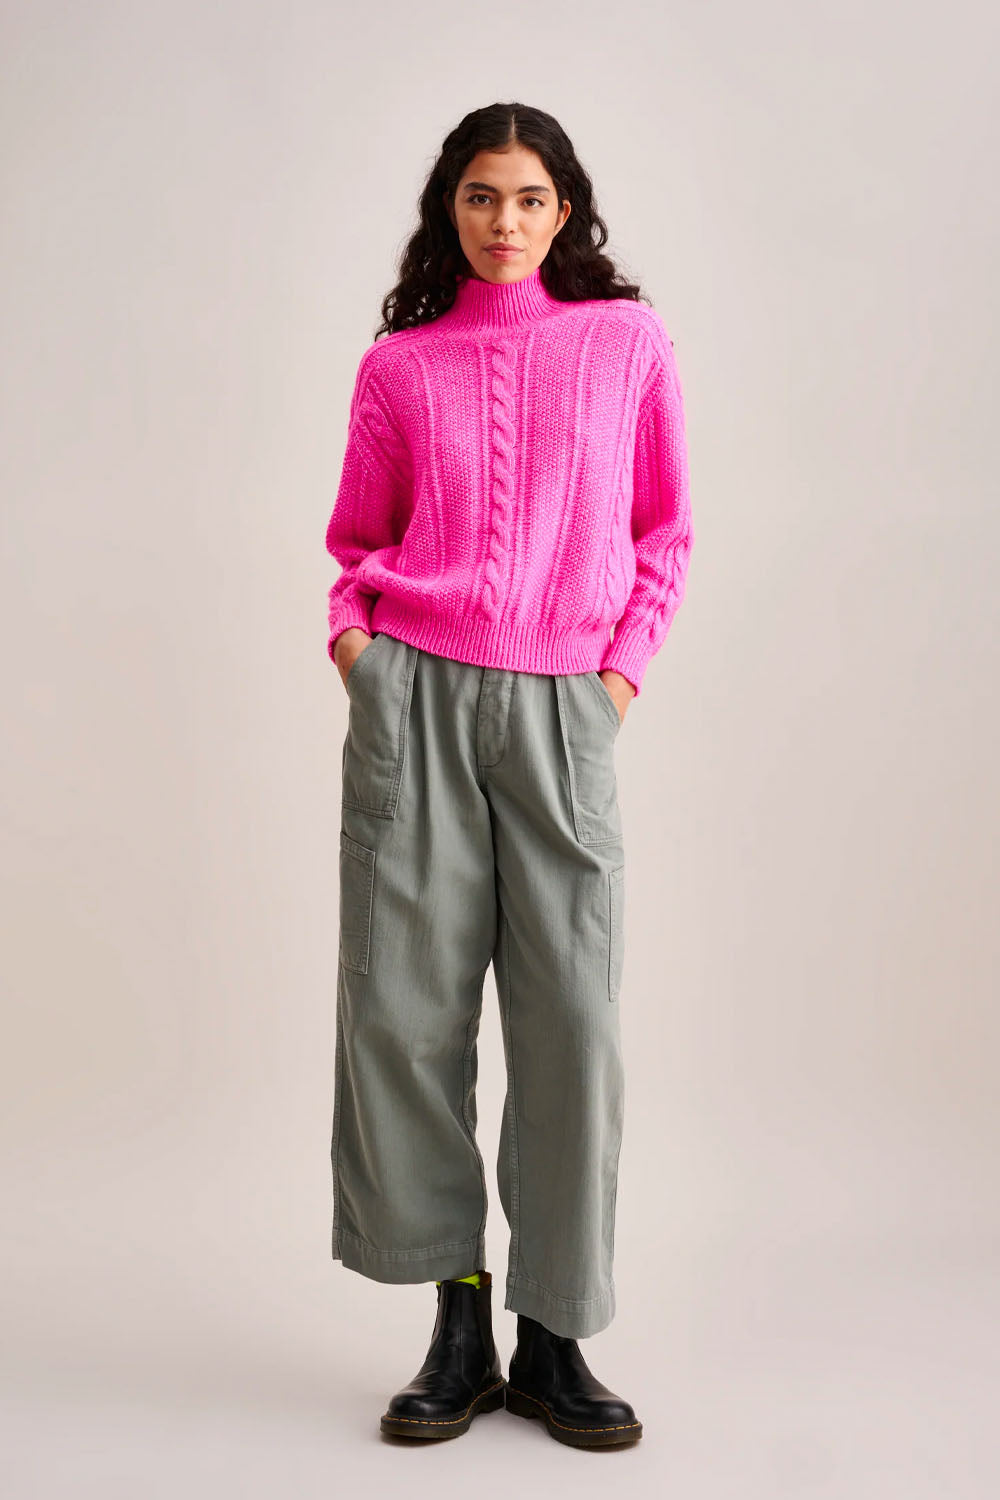 Bellerose - Nanphu Sweater: Fluo Pink